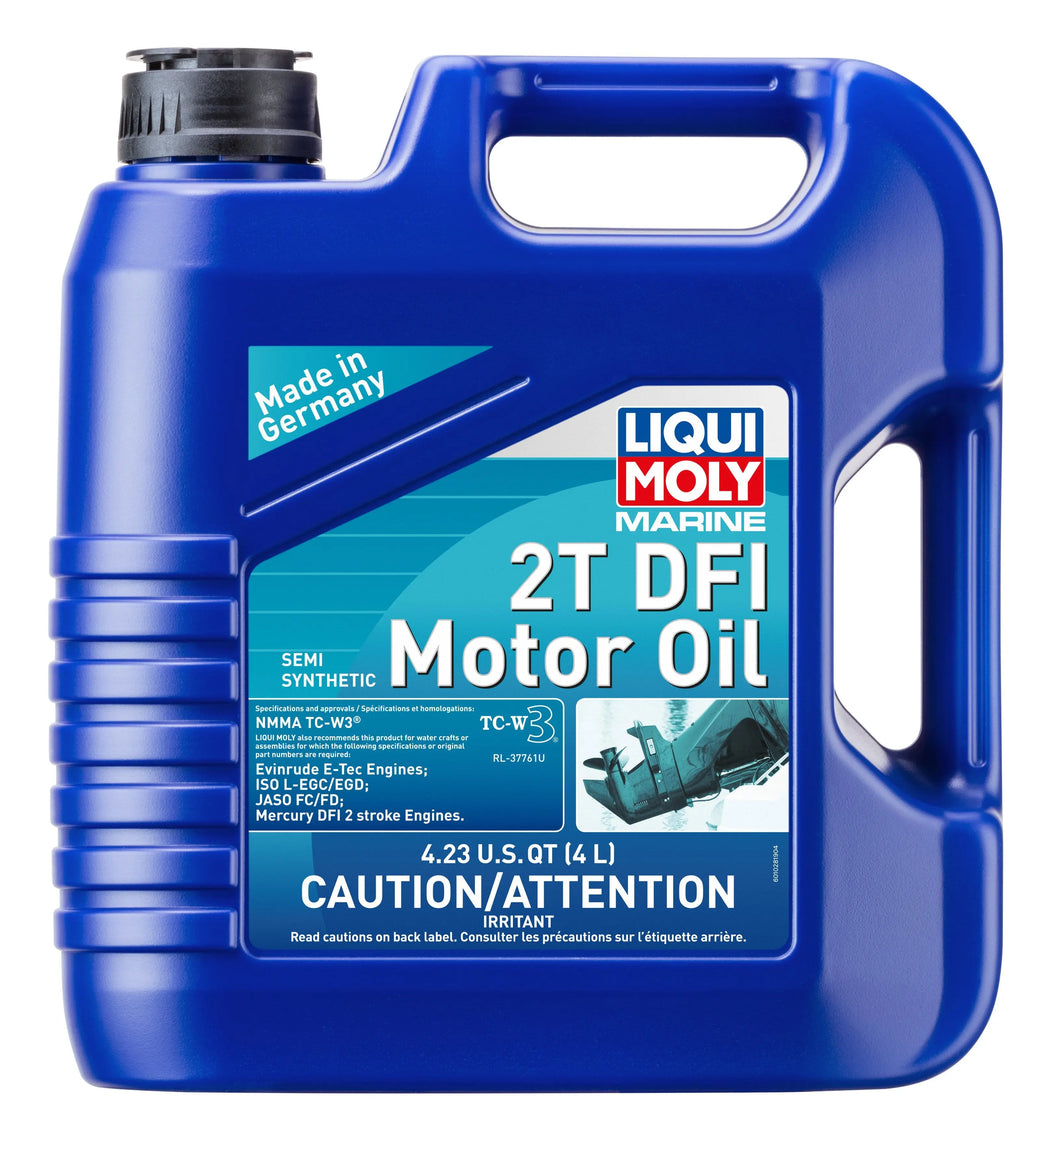 Liqui Moly Marine 2T DFI Motor Oil 4L - Autolube Group